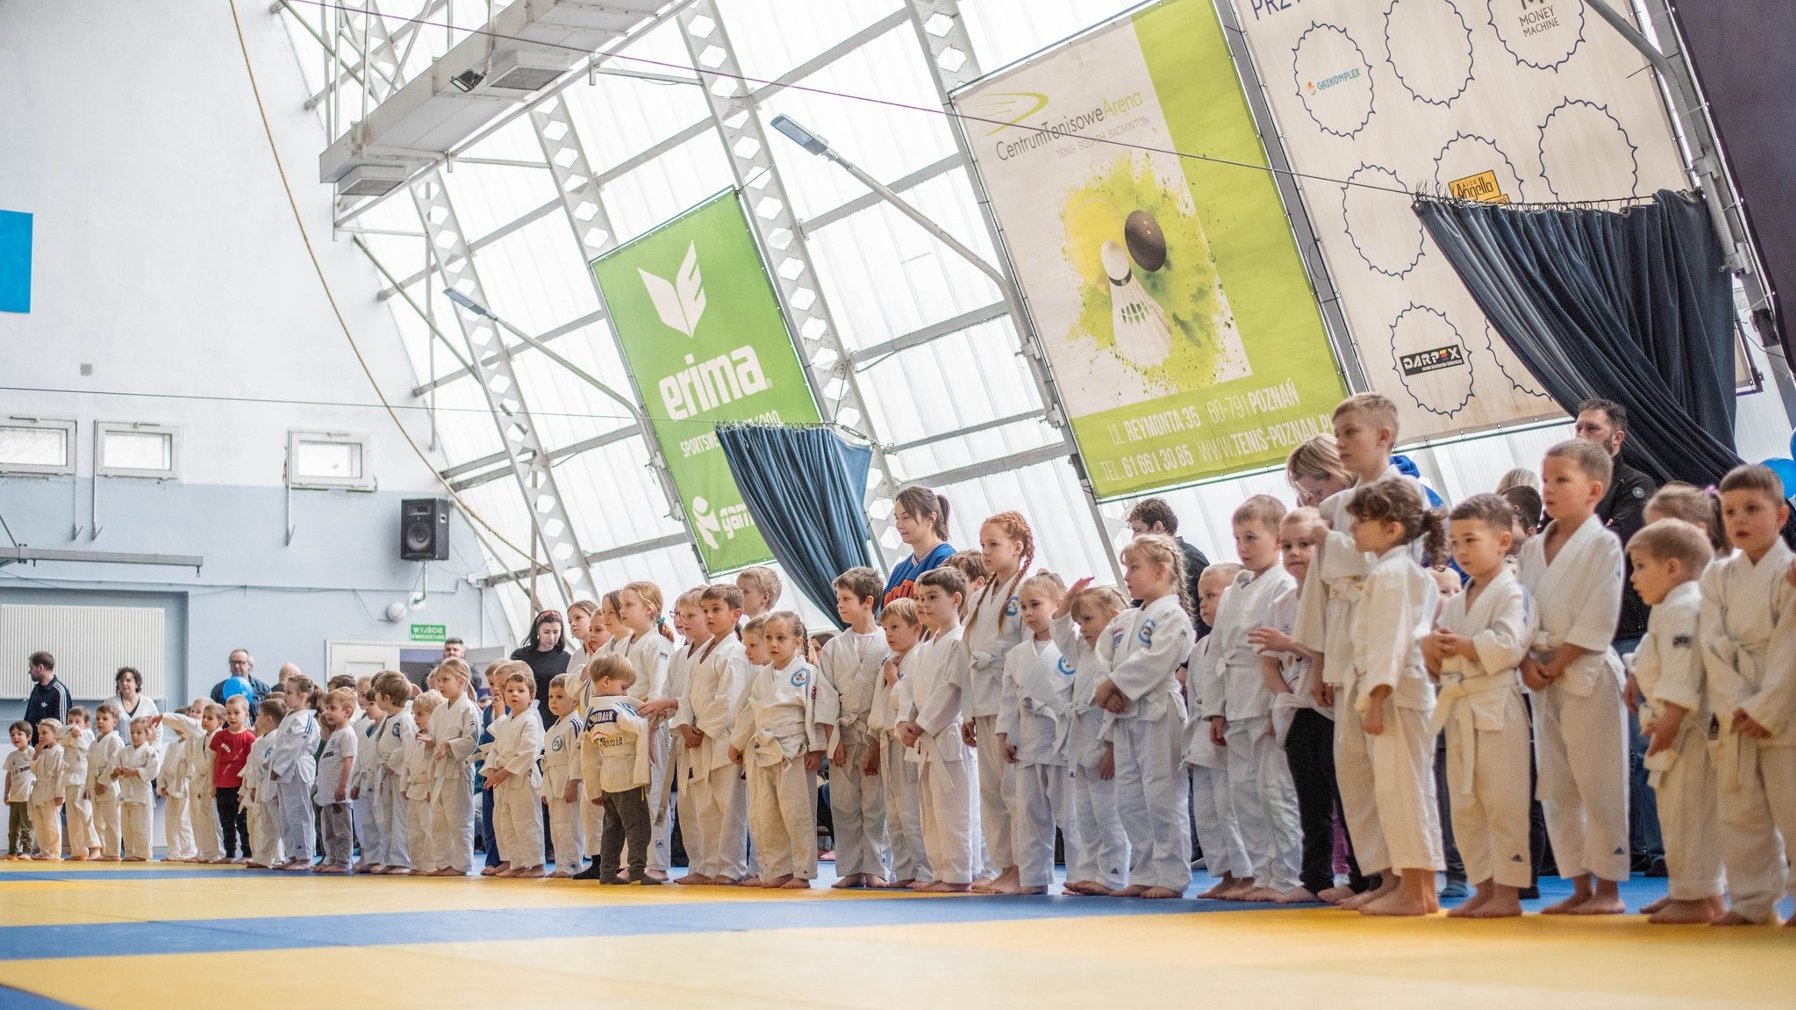 Na zdjęciu młodzi judocy stojący w rzędzie